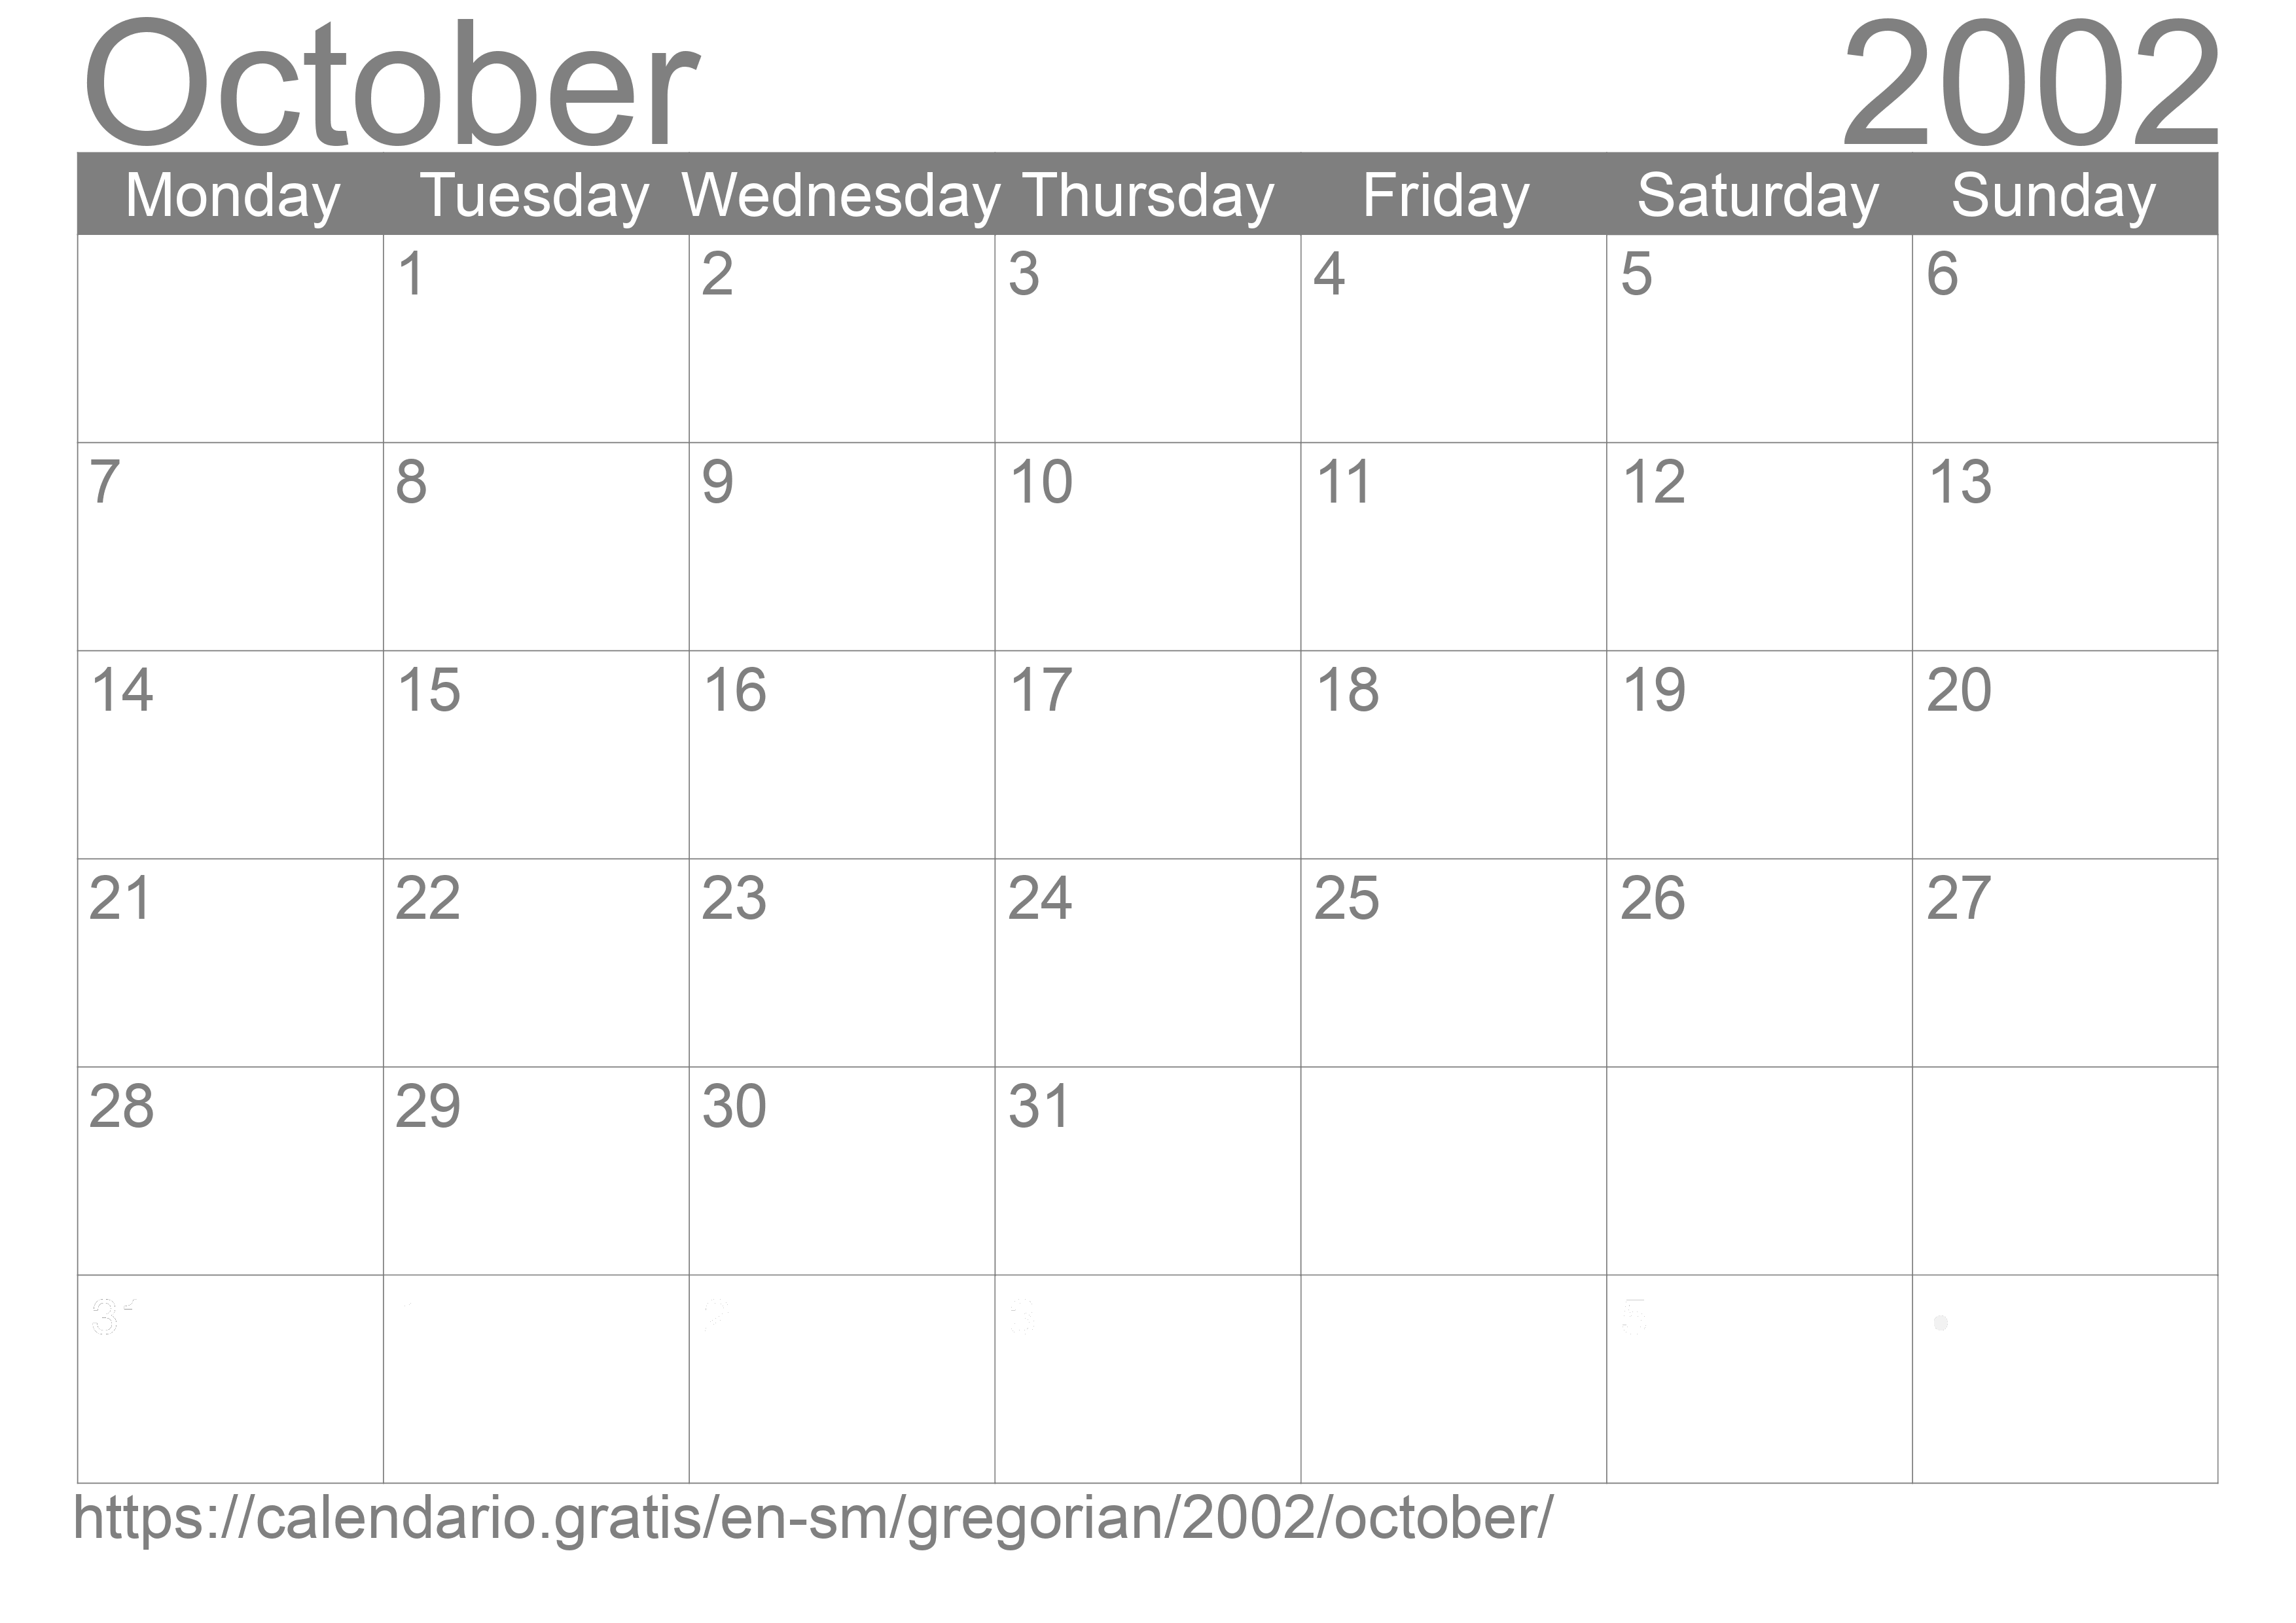 Calendar October 2002 to print